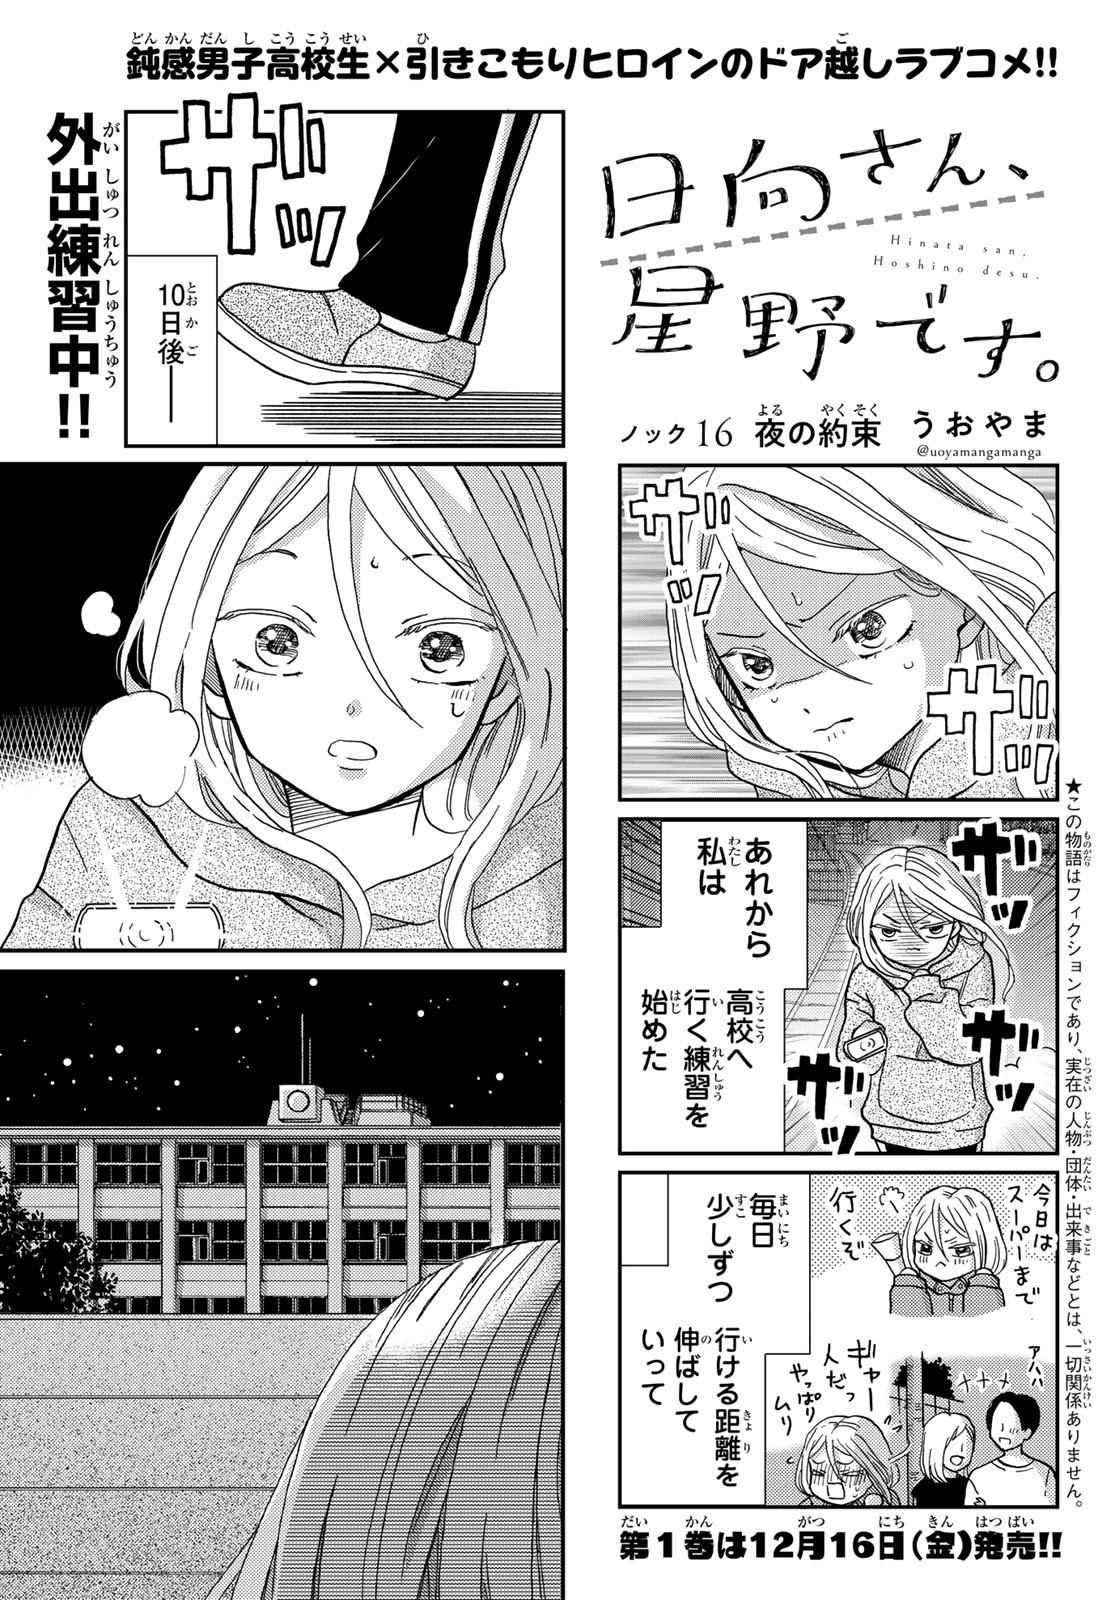 Hinata-san, Hoshino desu. - Chapter 016 - Page 1